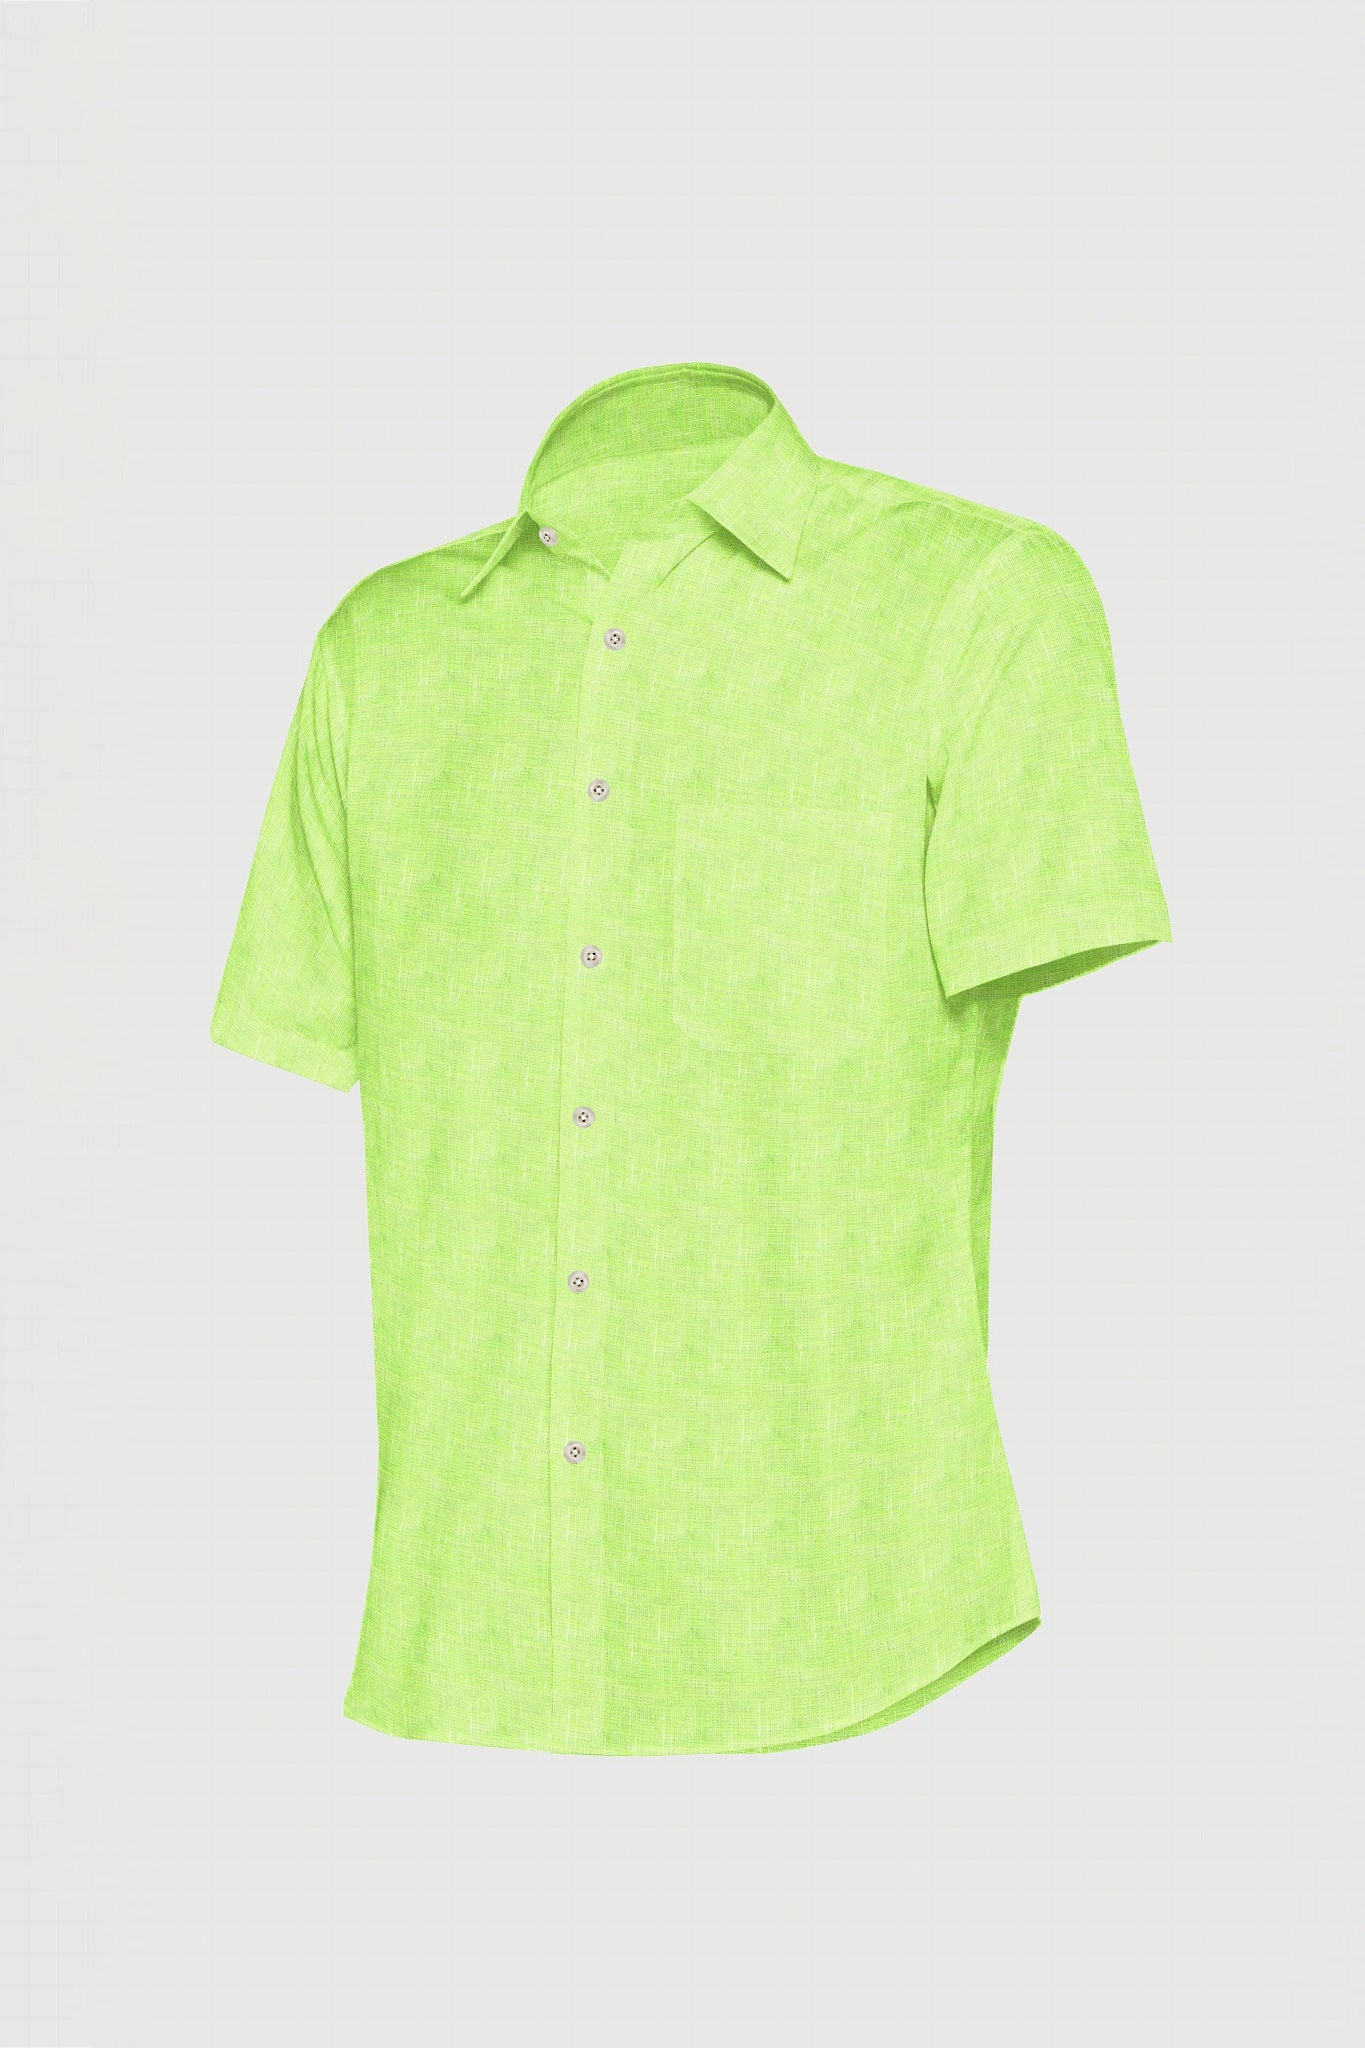 Lime Green Men's Luxurious Linen Shirt